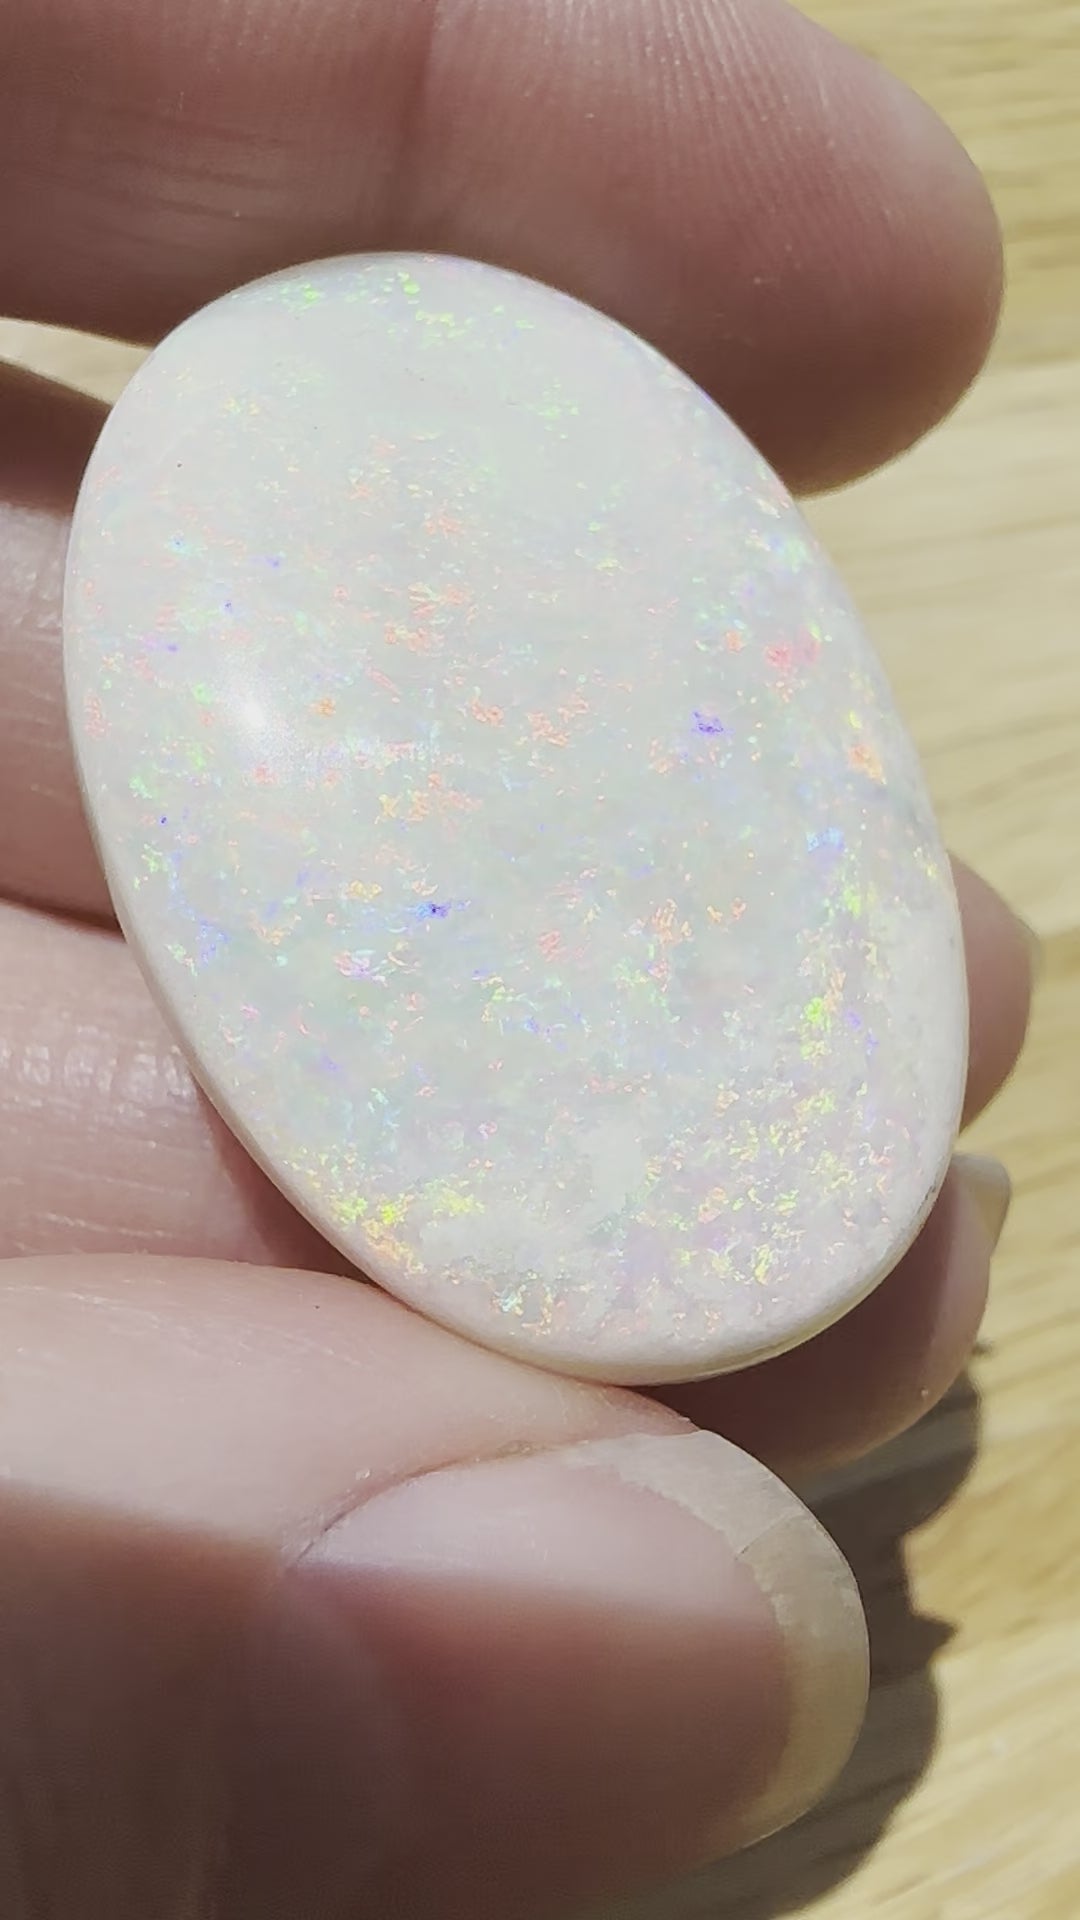 Natural Large Andamooka solid cut opal 67.5 cts